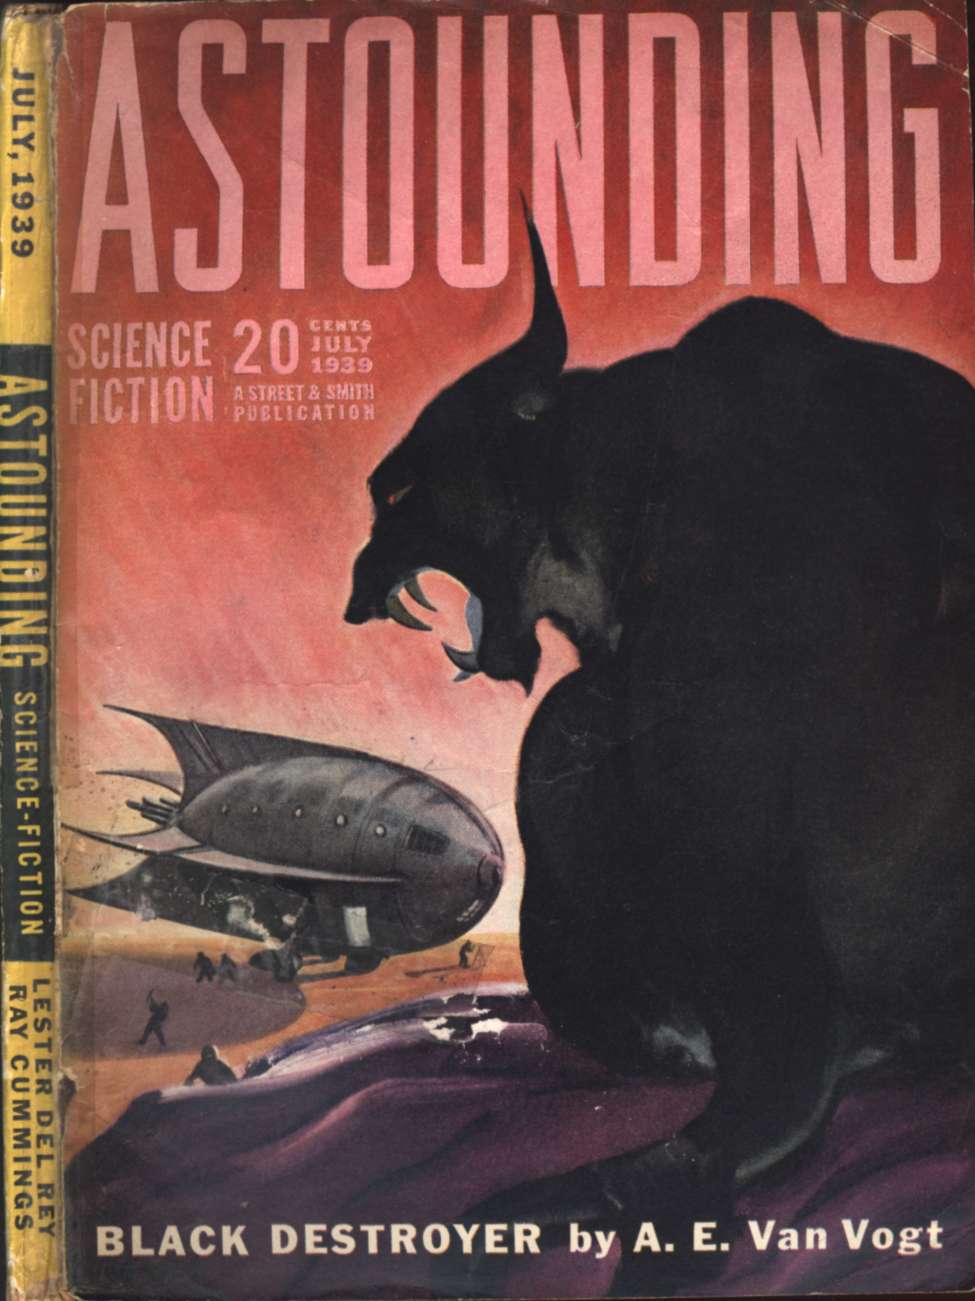 Book Cover For Astounding v23 5 - Black Destroyer - A. E. van Vogt